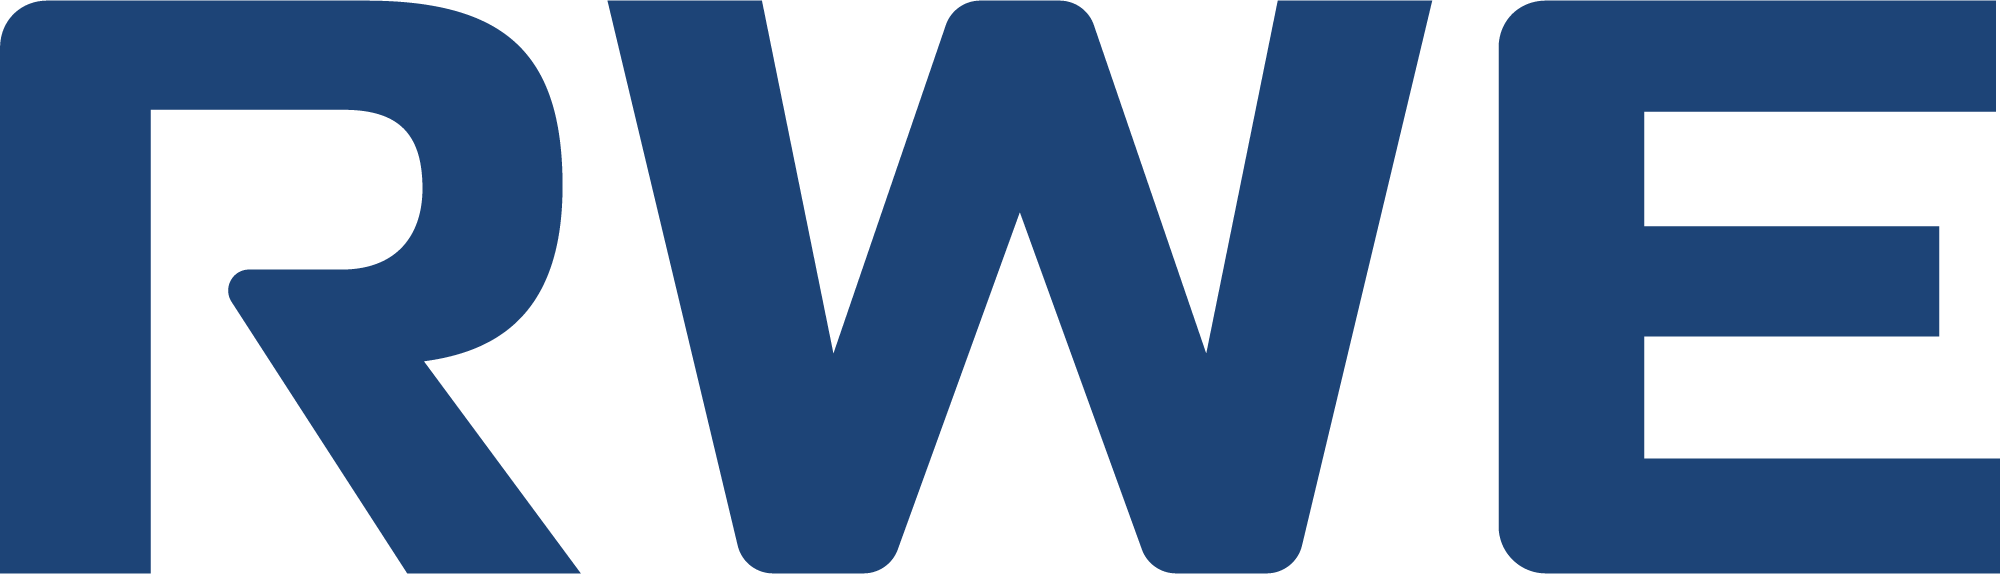 RWE Logo 2019 Blue sRGB